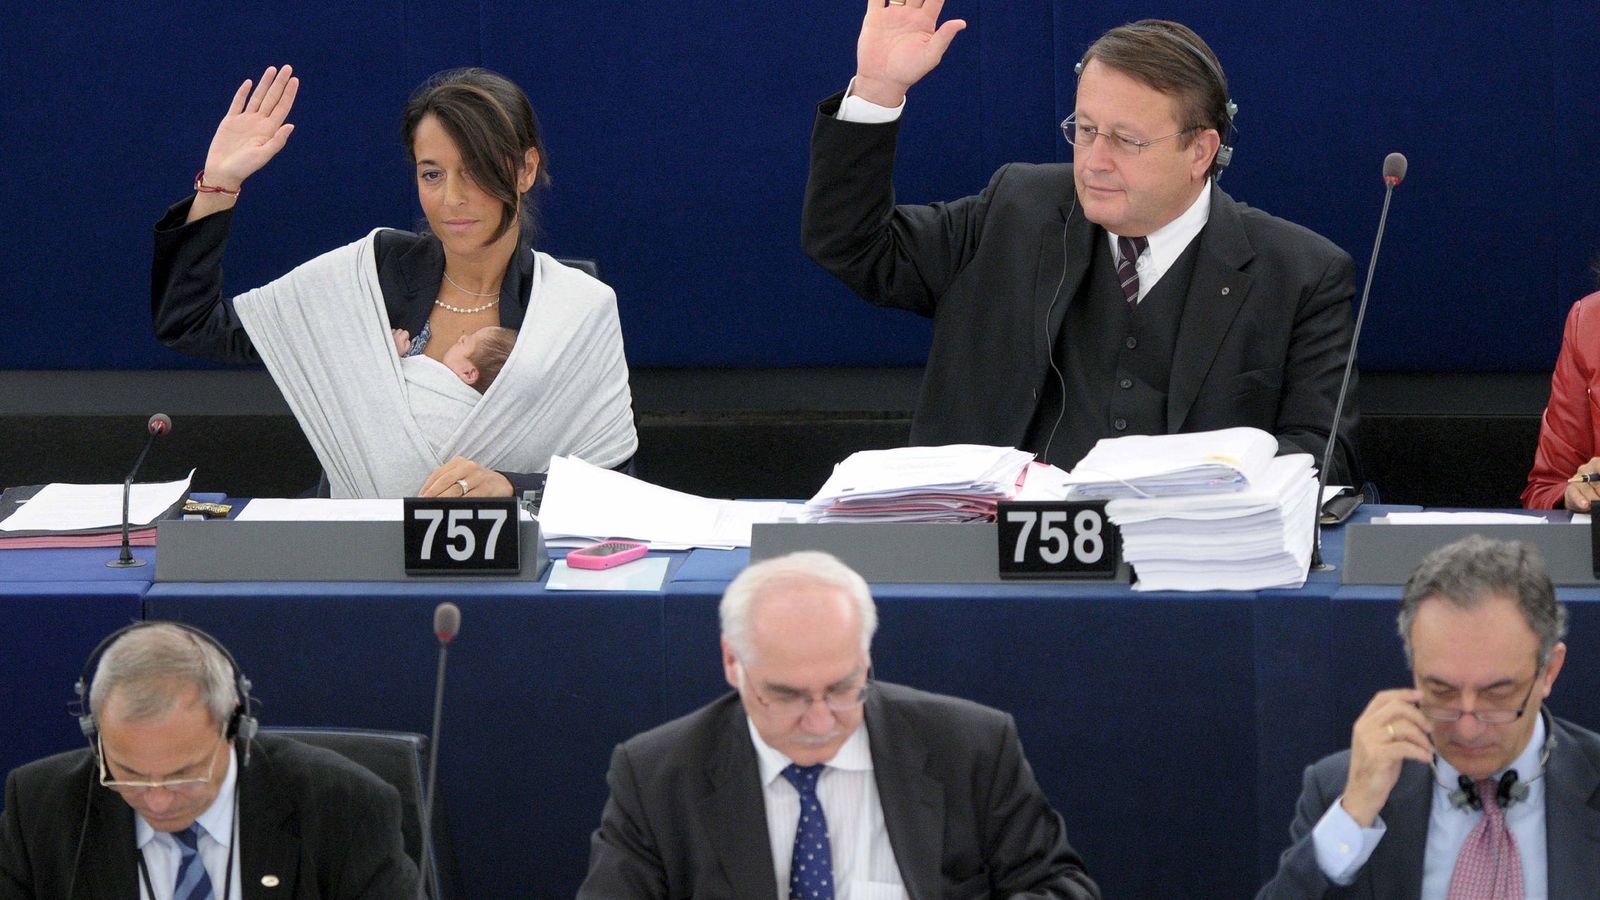 Foto: La eurodiputada Licia Ronzulli (i) sostiene a su bebé dormido en brazos mientras vota durante la sesión plenaria mensual del Parlamento Europeo en 2010. (EFE)